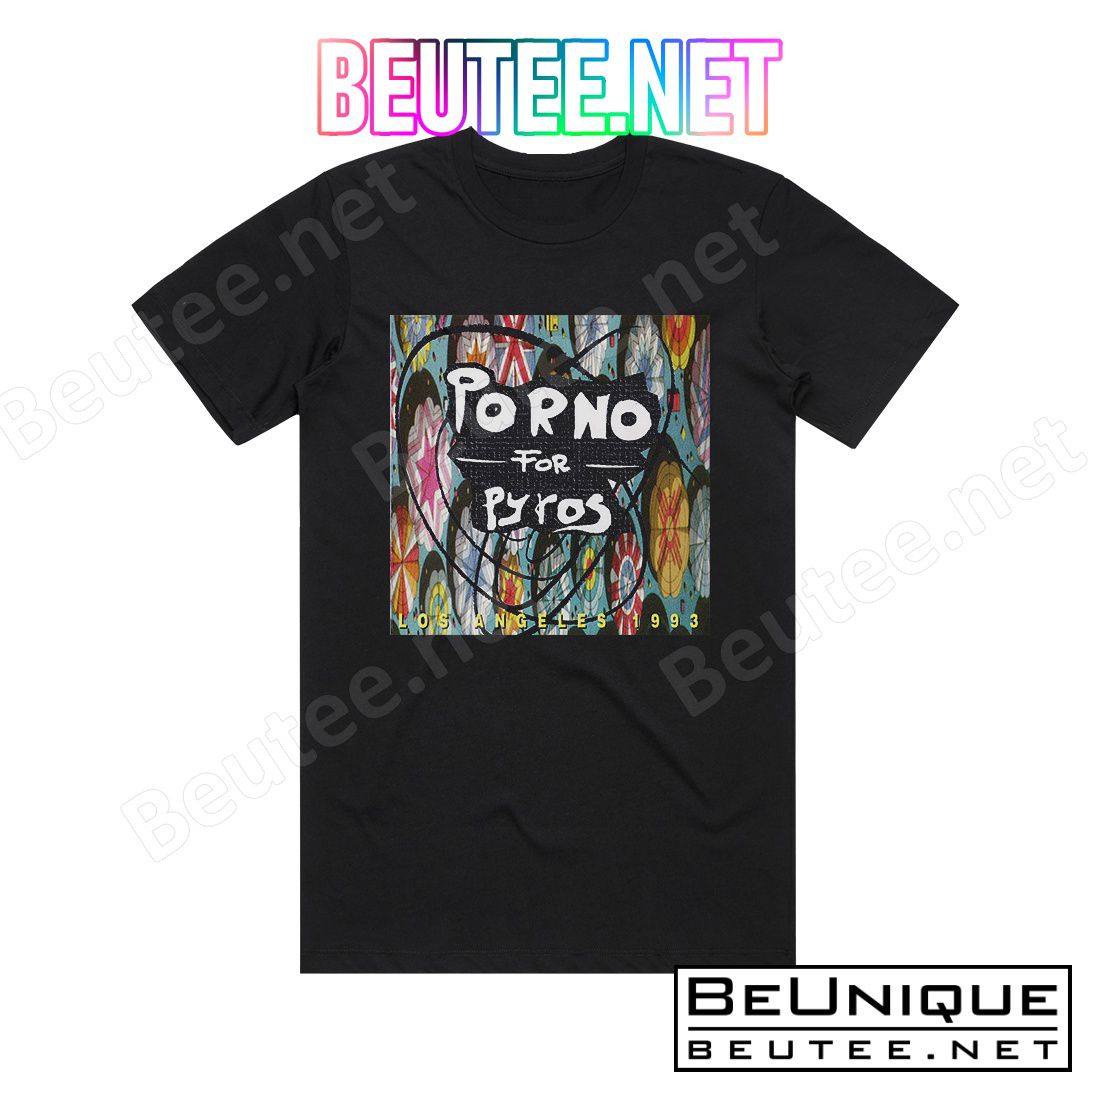 Porno for Pyros Los Angeles 1993 Album Cover T-Shirt